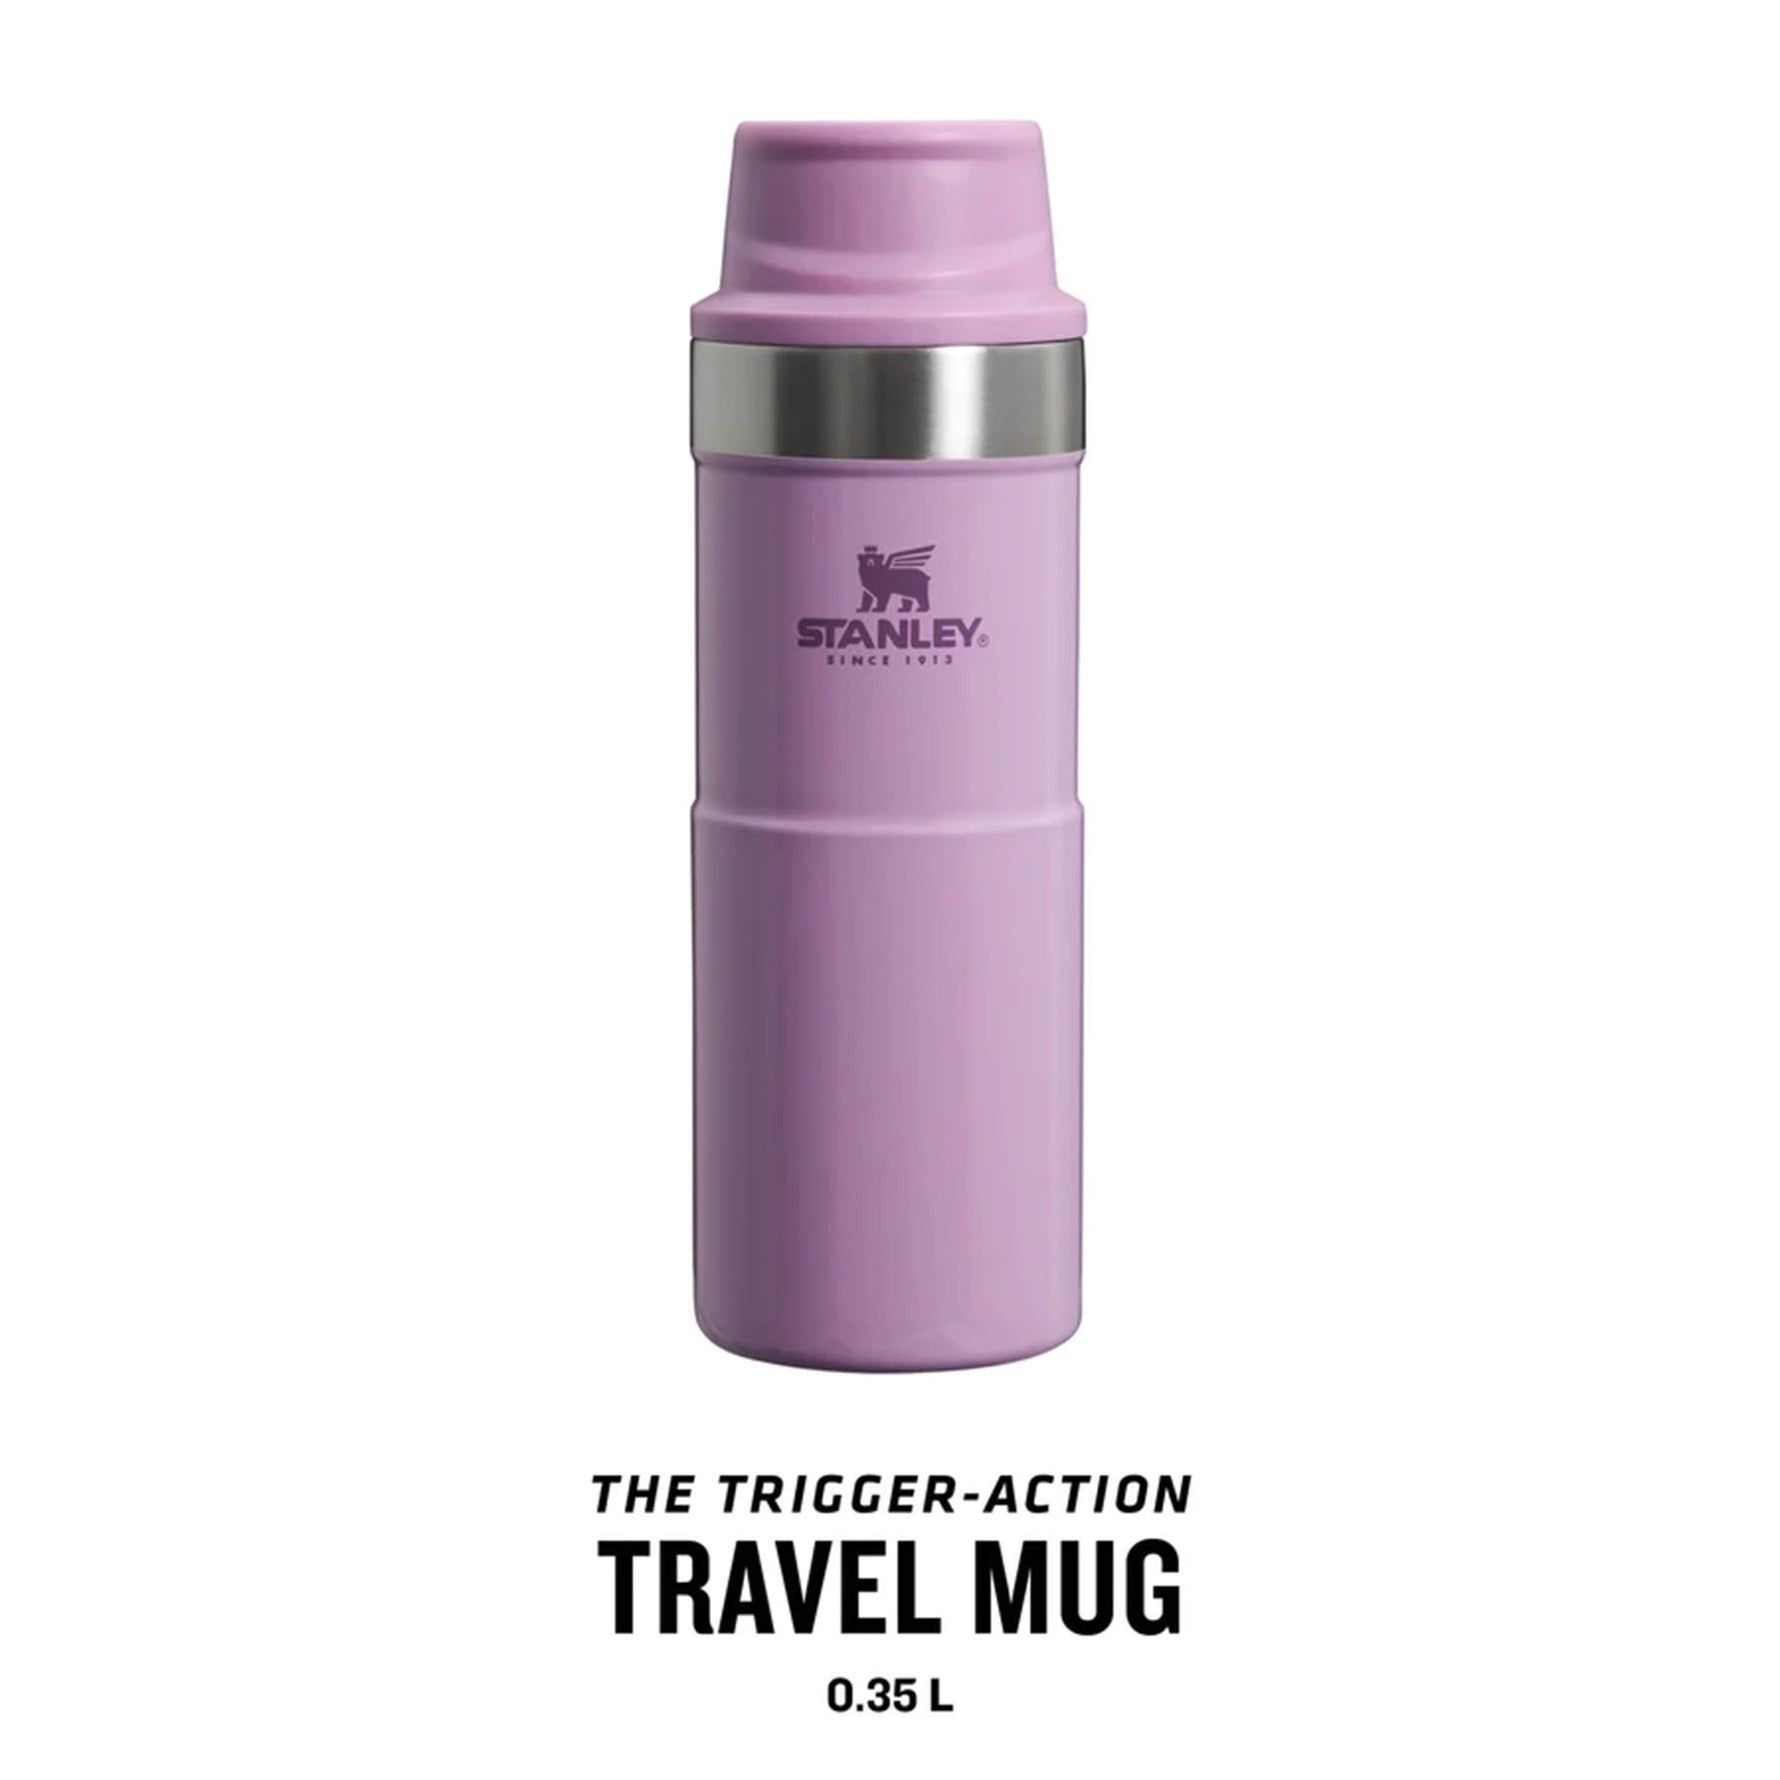 Stanley Trigger-Action Travel Mug 0.35L 